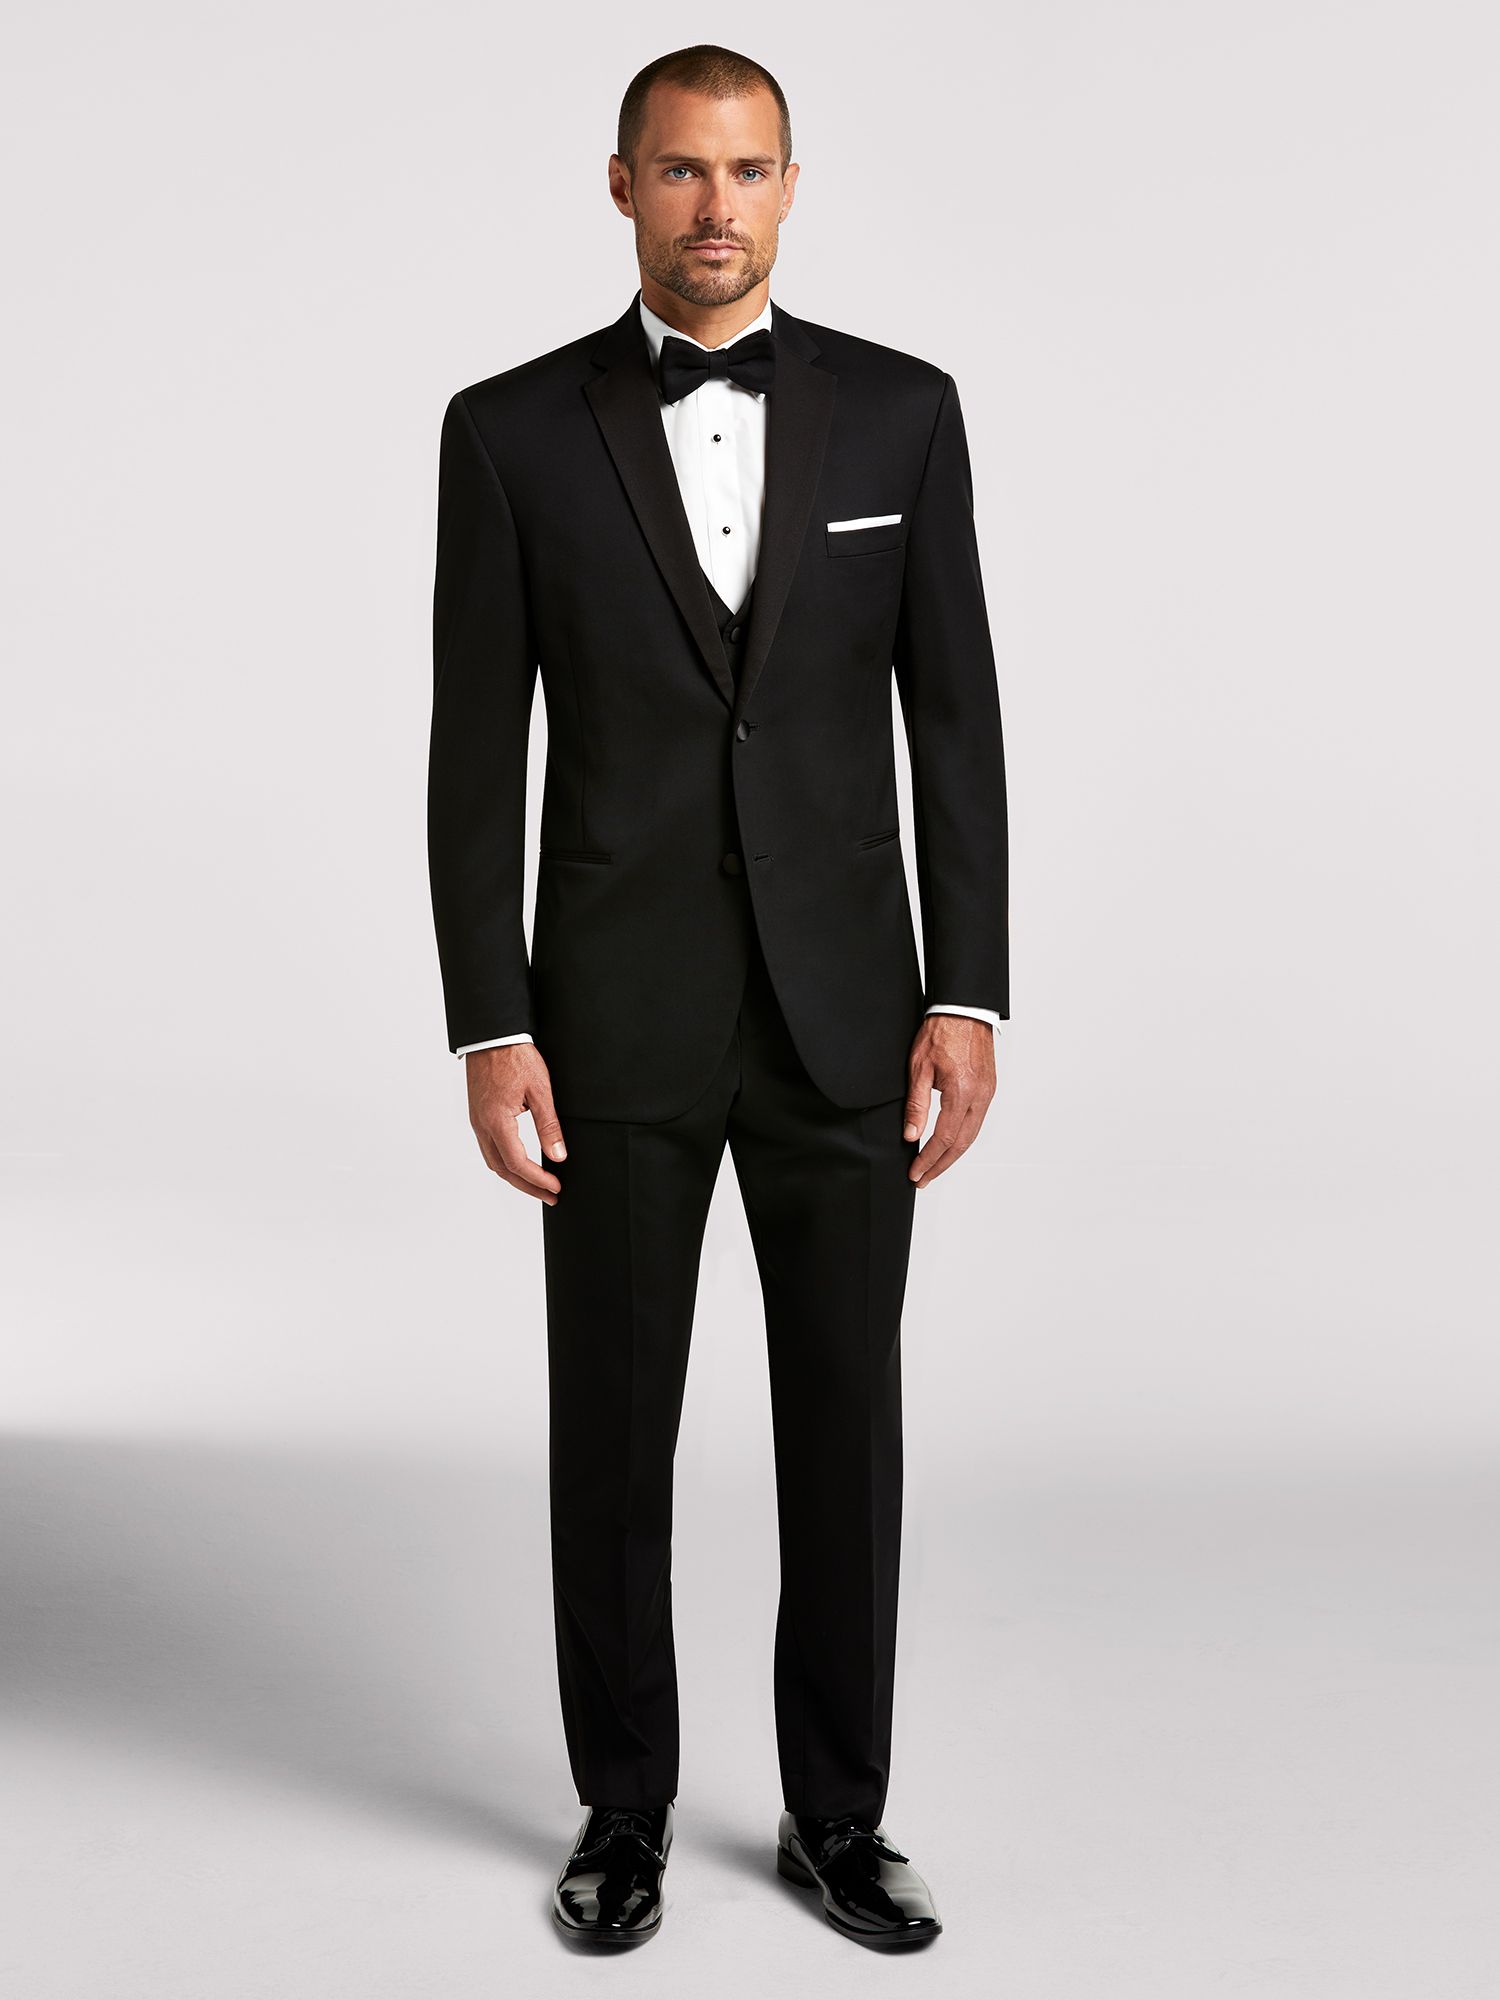 formal tuxedo